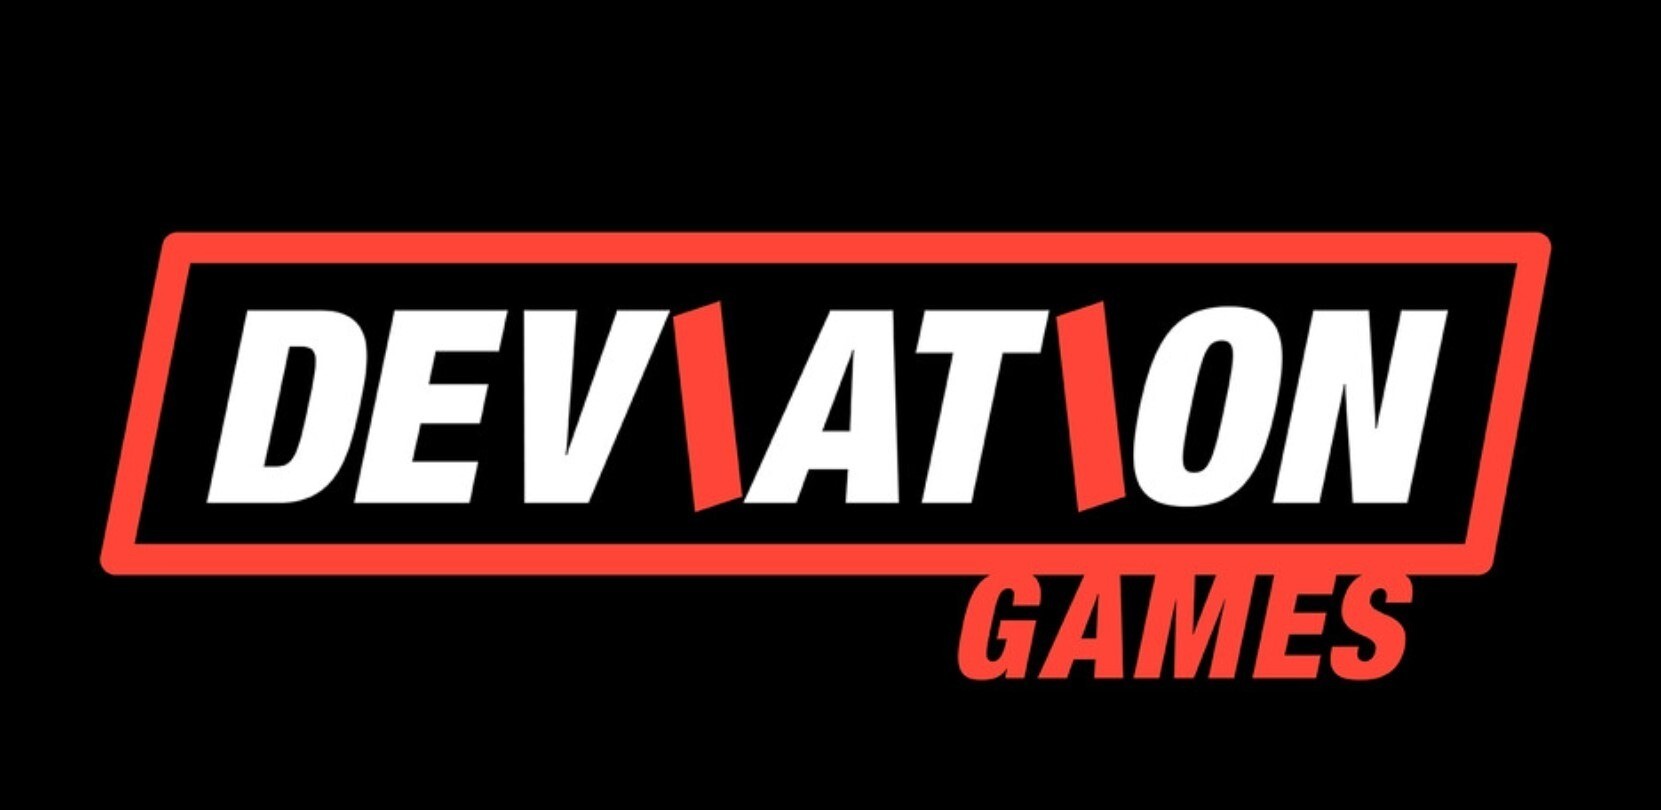 deviation games